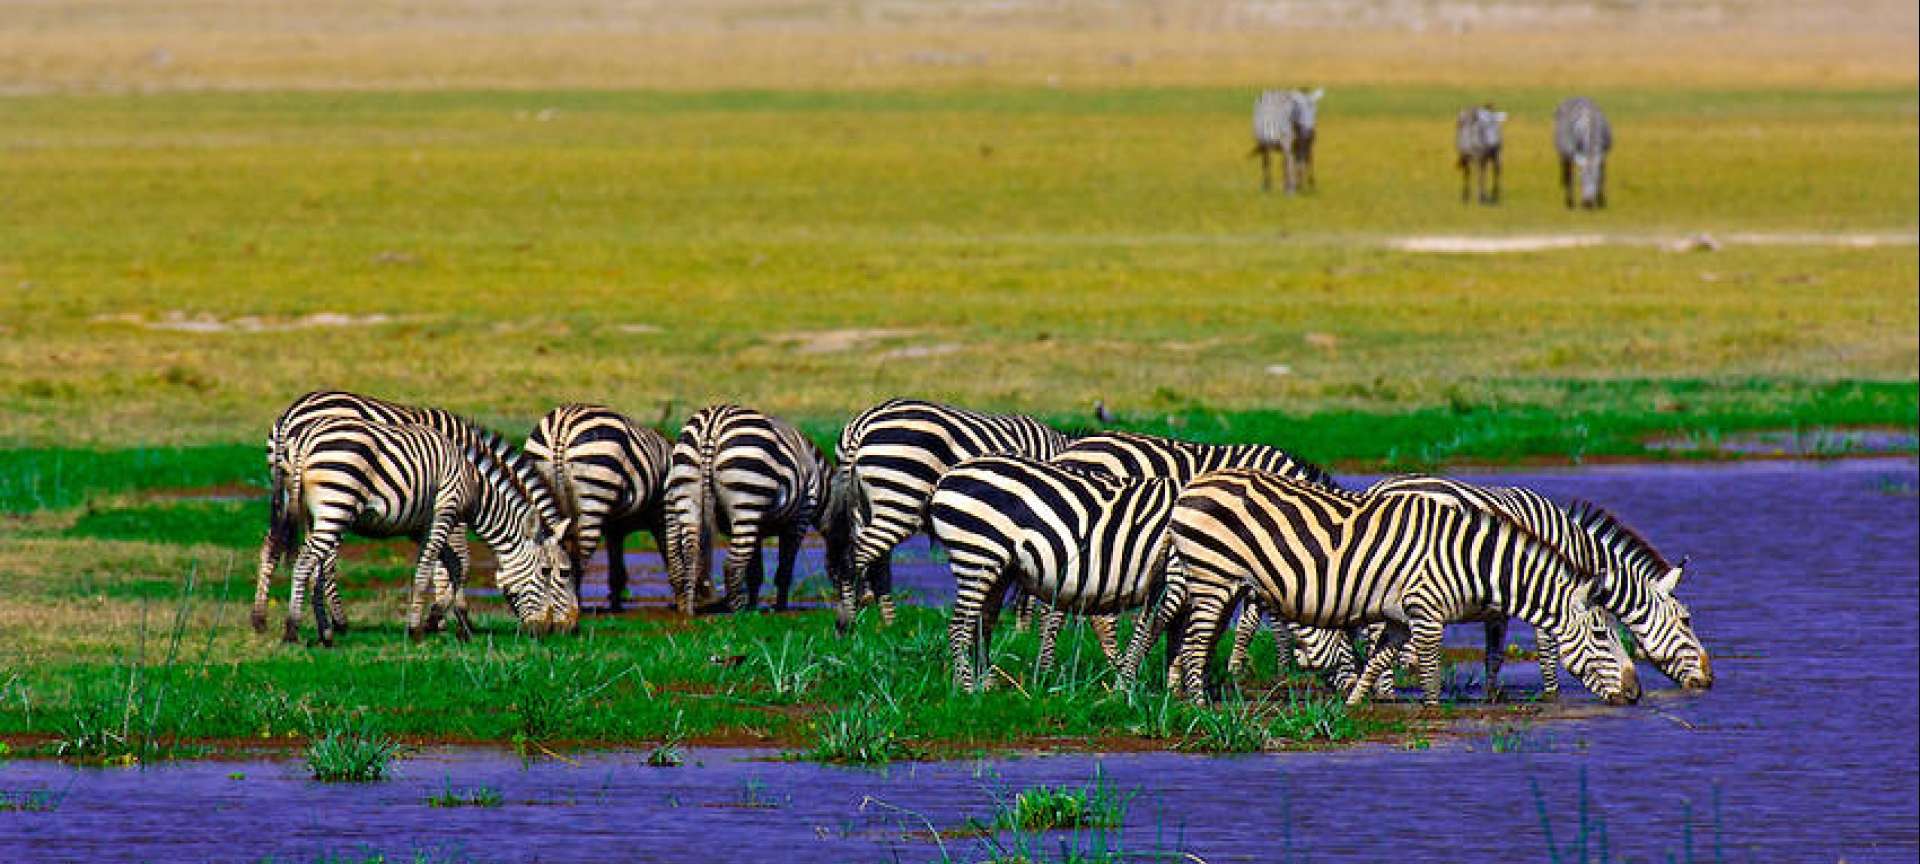 About kenya safaris